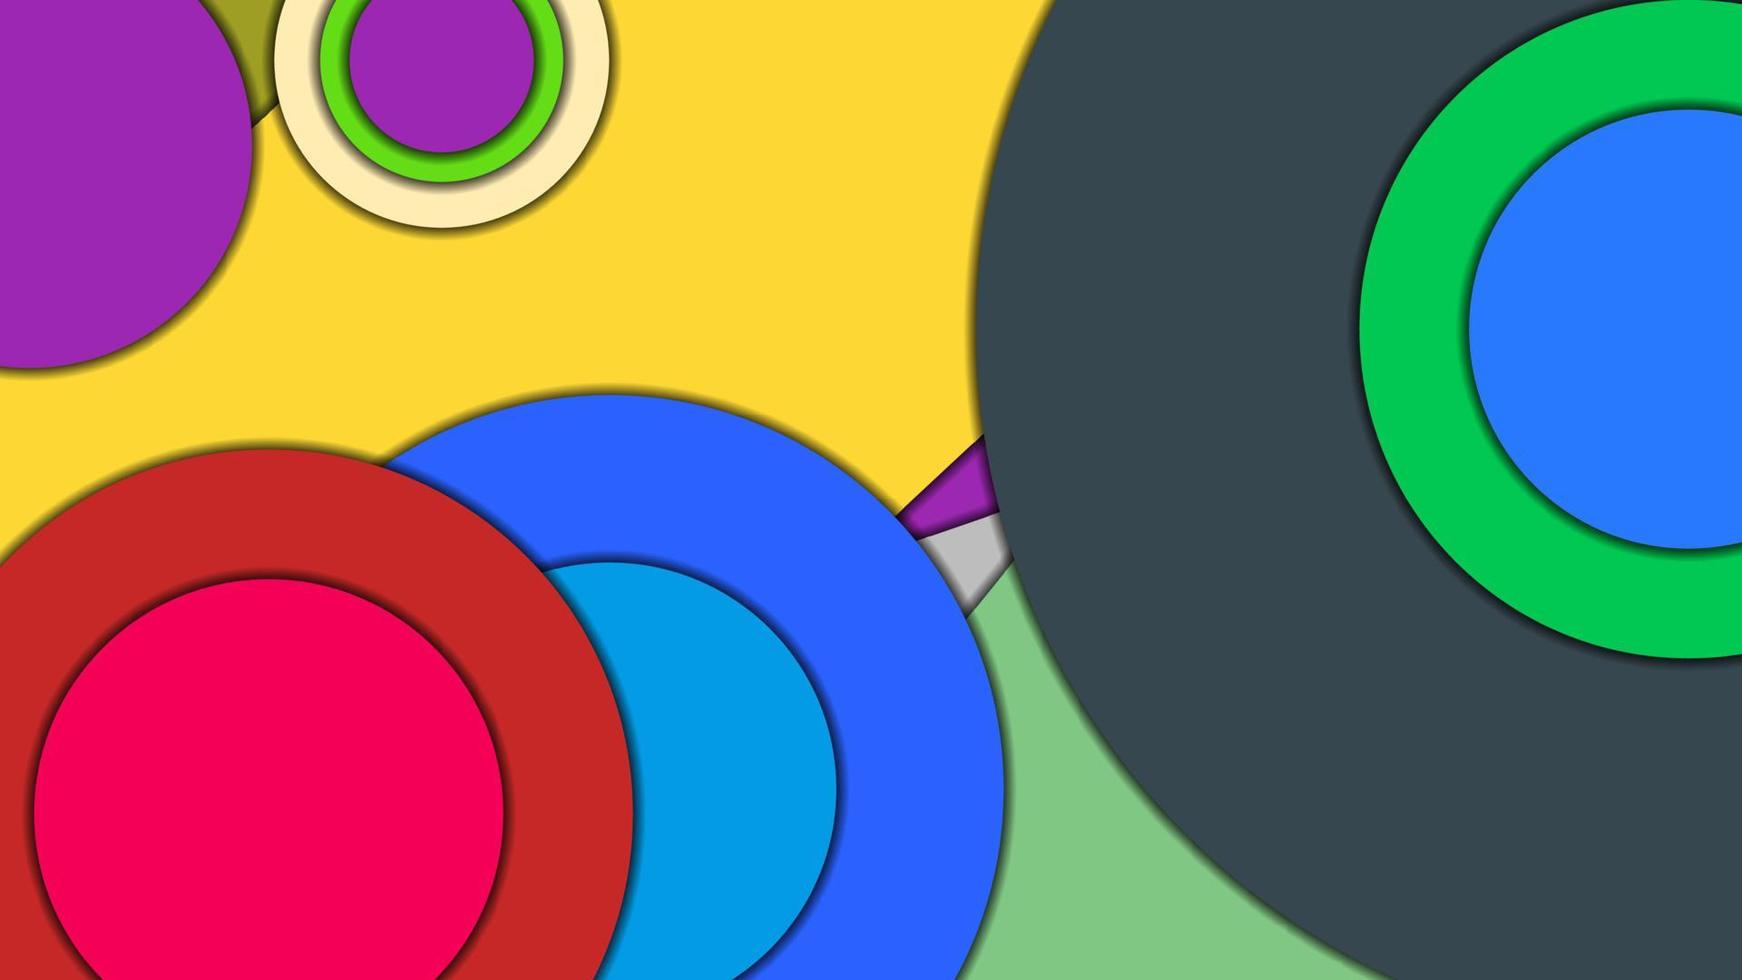 abstrato geométrico vetorial colorido em estilo de design de material com círculos concêntricos e retângulos girados com sombras, imitando papel cortado. vetor